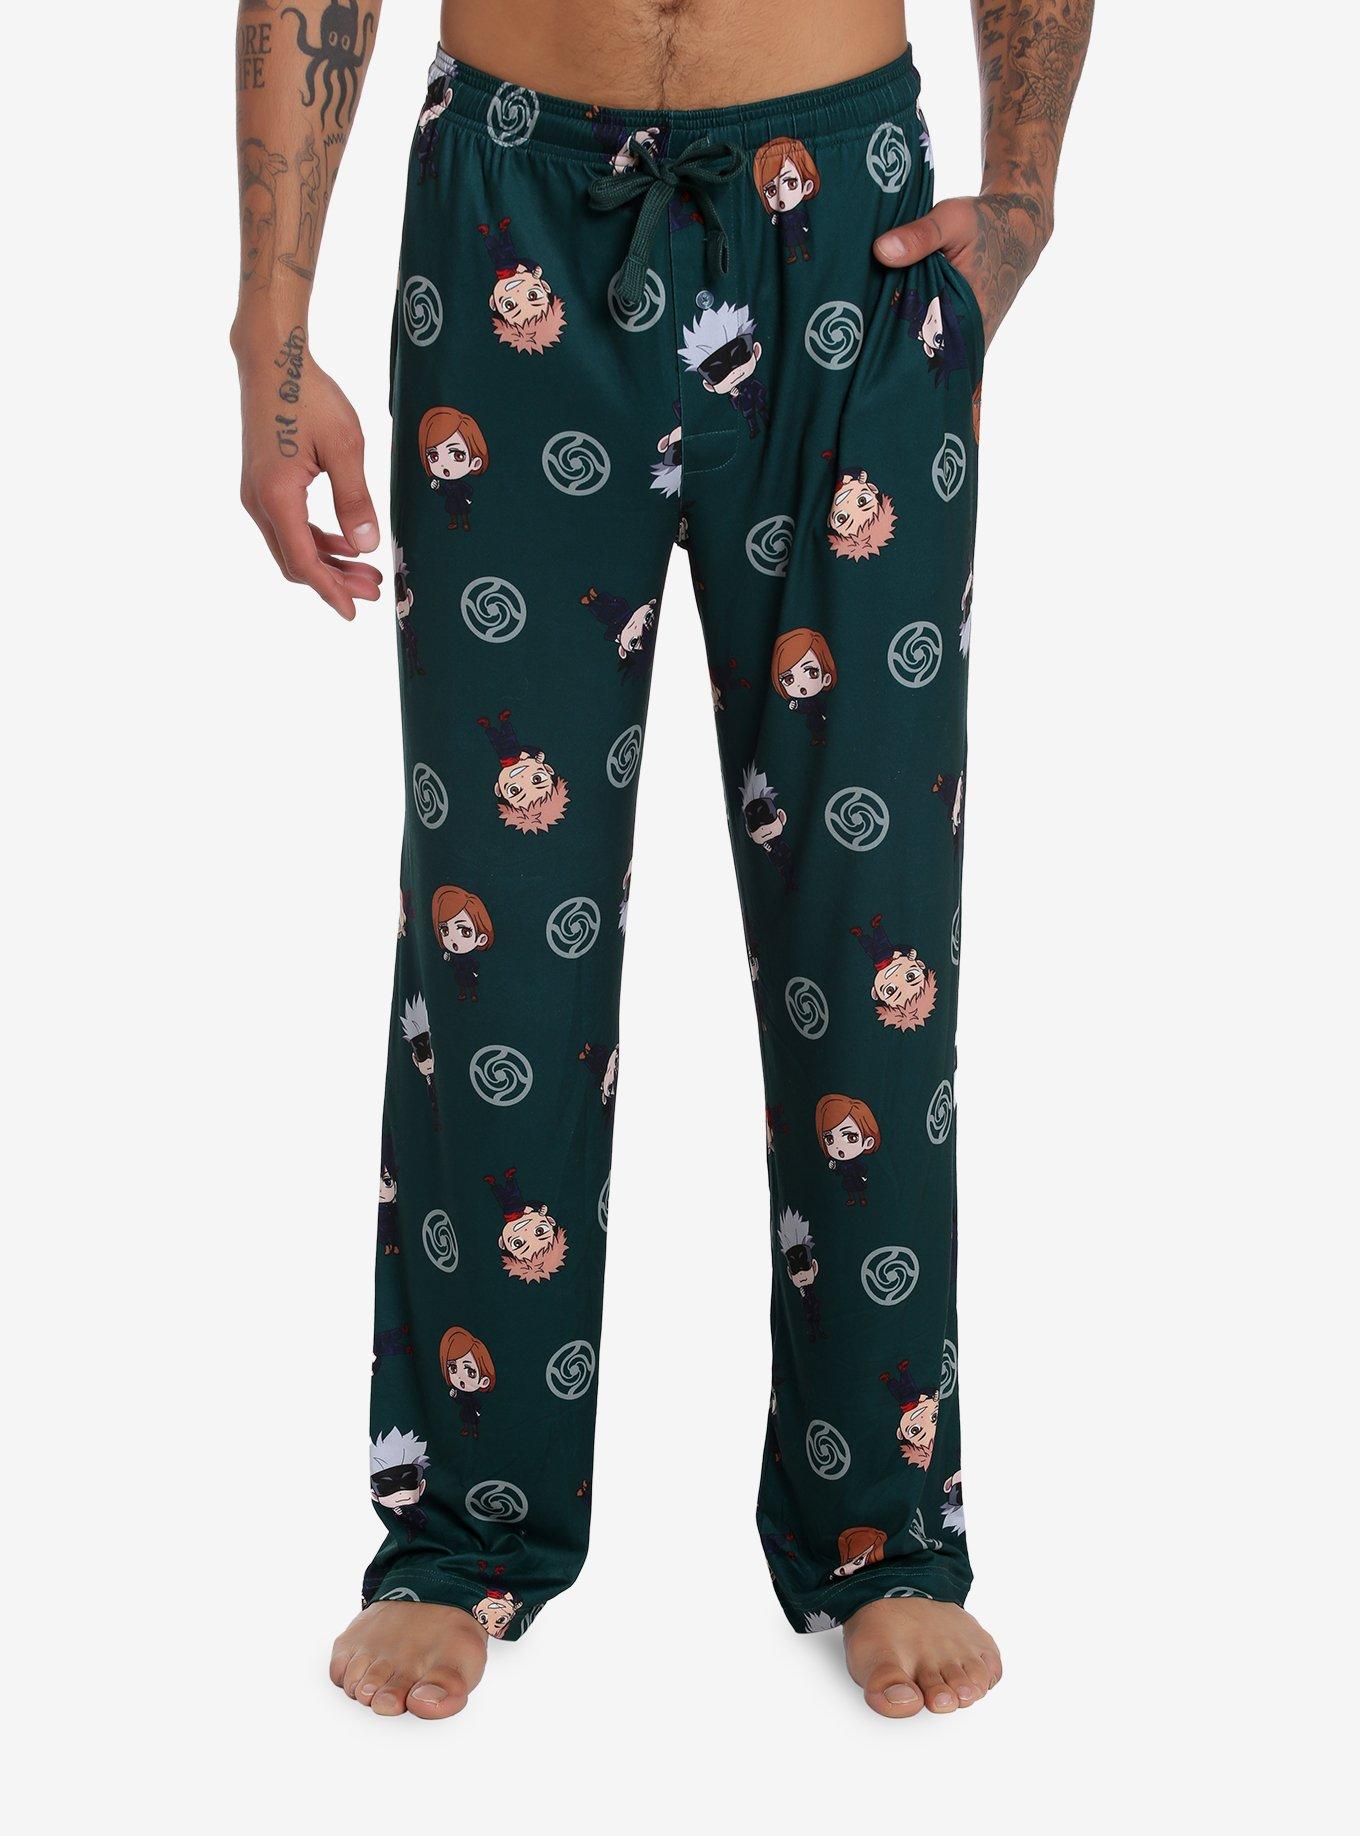 Rick And Morty “Christmas” pajama Lounging pants Medium